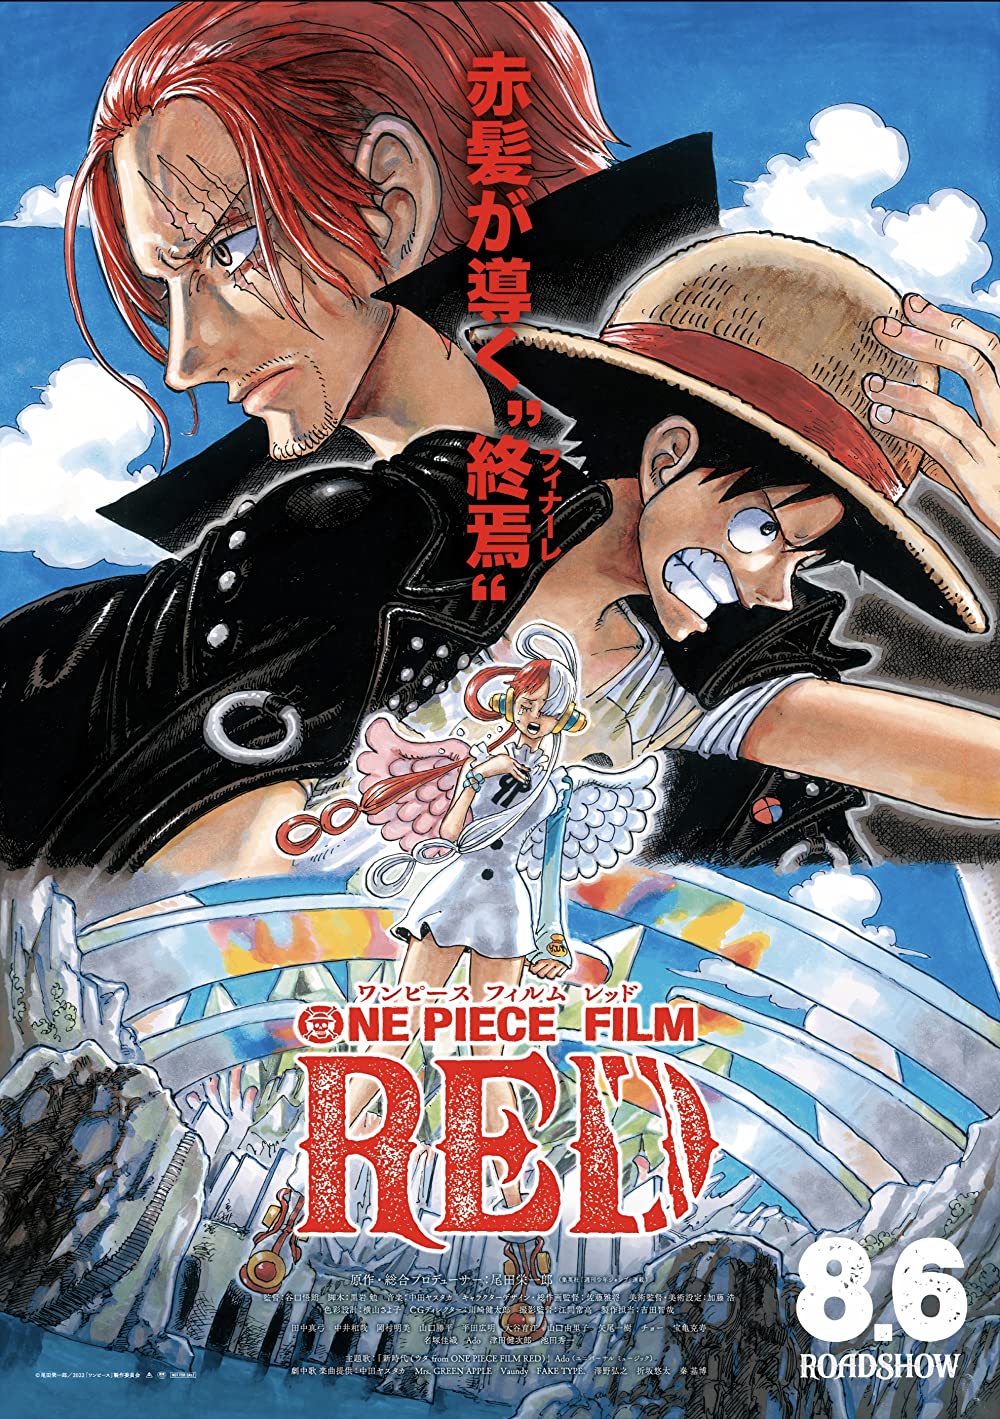 ดูหนังใหม่ One Piece Film: Red 2022 วันพีซ ฟิล์ม เรด doomovie-hd